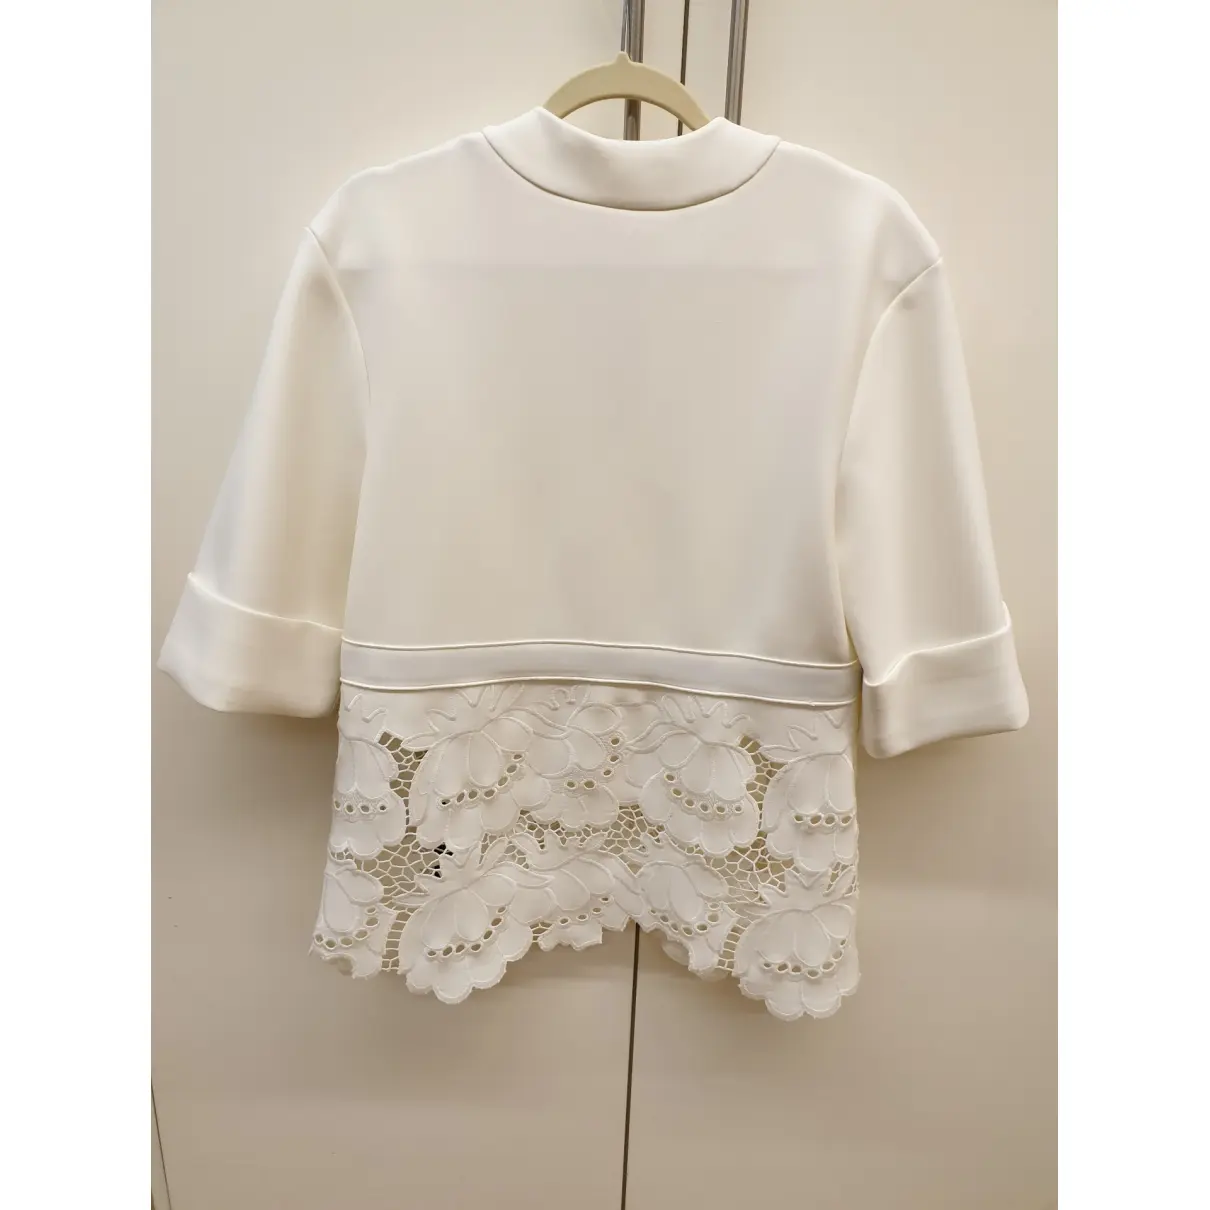 Buy Victoria, Victoria Beckham Silk blouse online